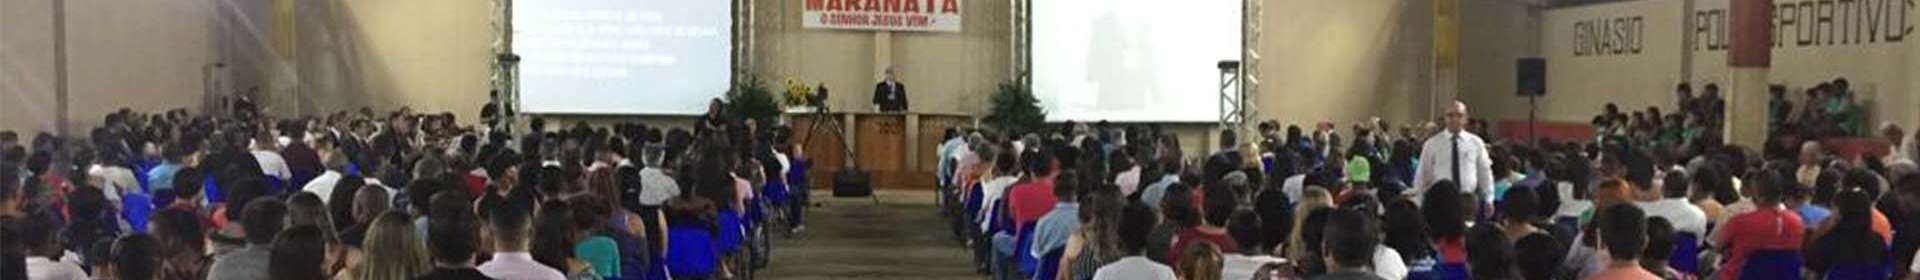 Evangelização em Amparo do Serra reúne mais de novecentas pessoas